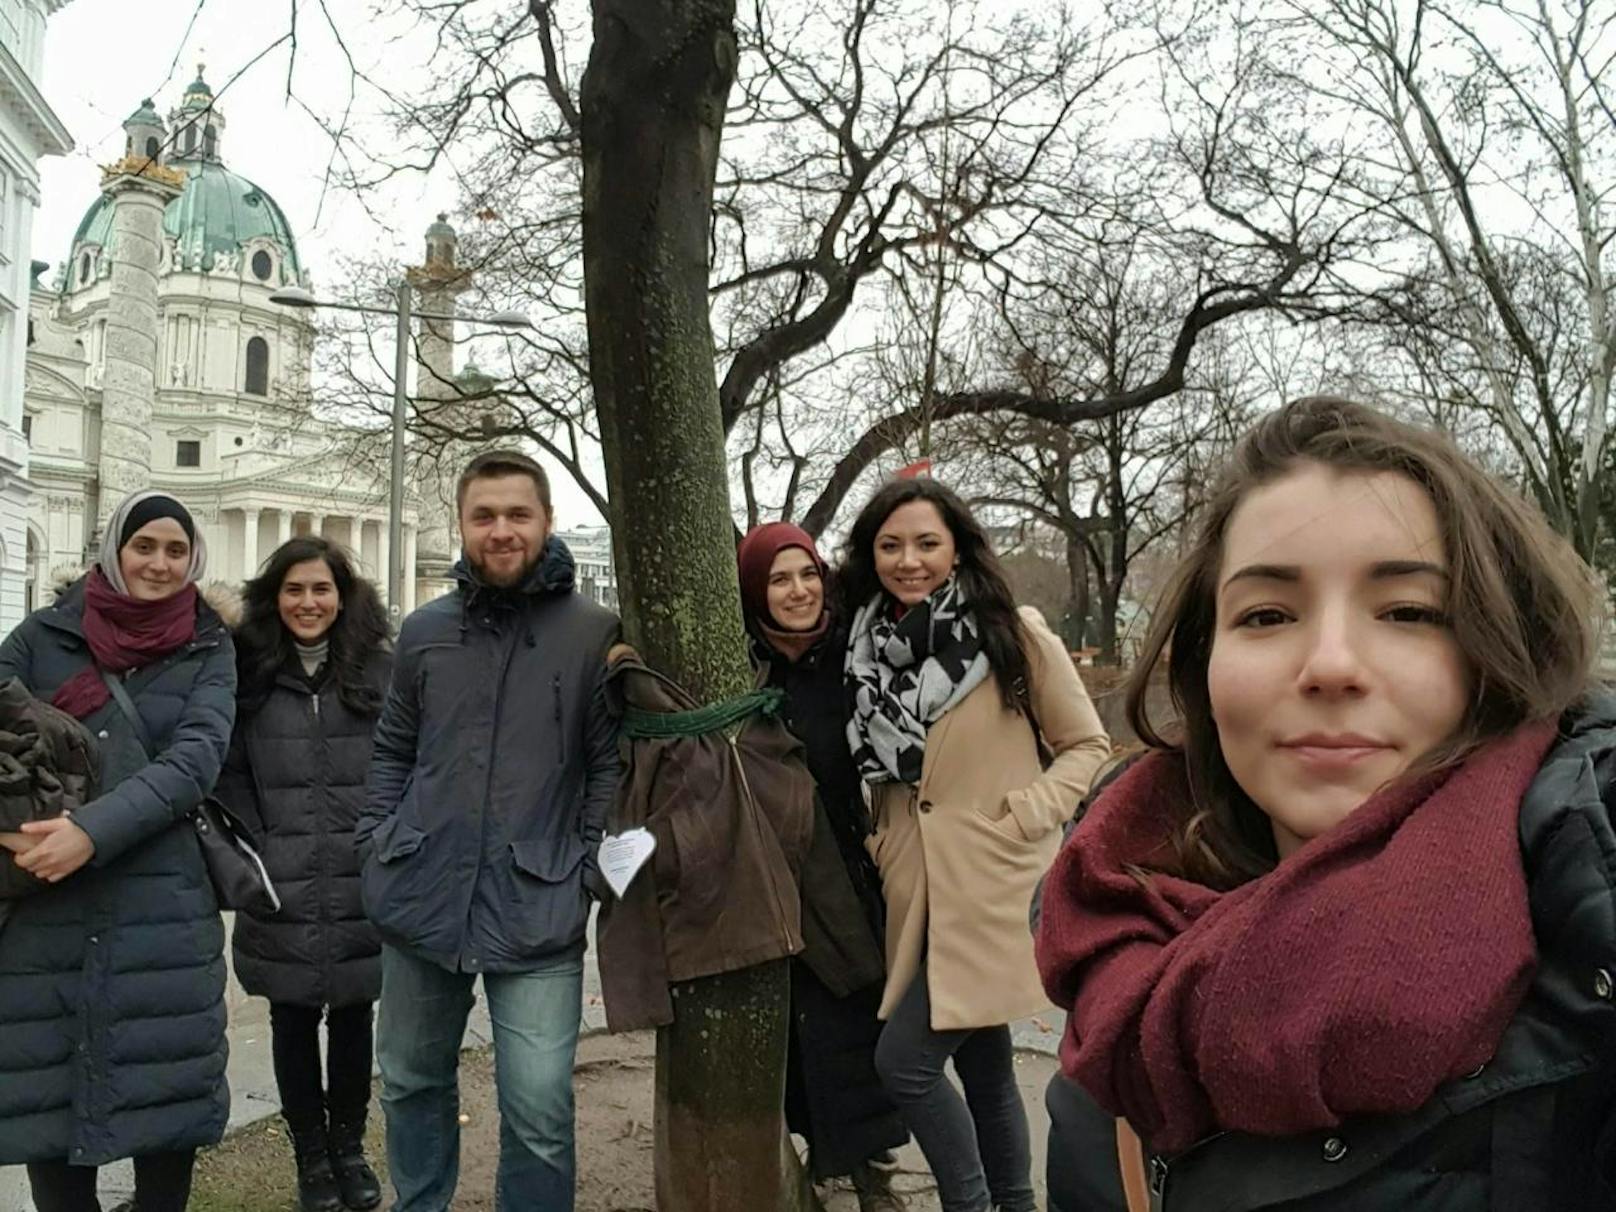 <b>Sechs Freunde - ein Ziel</b>:  Gemeinsam riefen sie die Spenden- und Hilfsaktion für Obdachlose in Wien ins Leben. 

Von links nach rechts: Hanife A. (24);  Gamze A. (25), Dzemal S. Gül S. (26); Esma C. (25); Semiha A. (26)